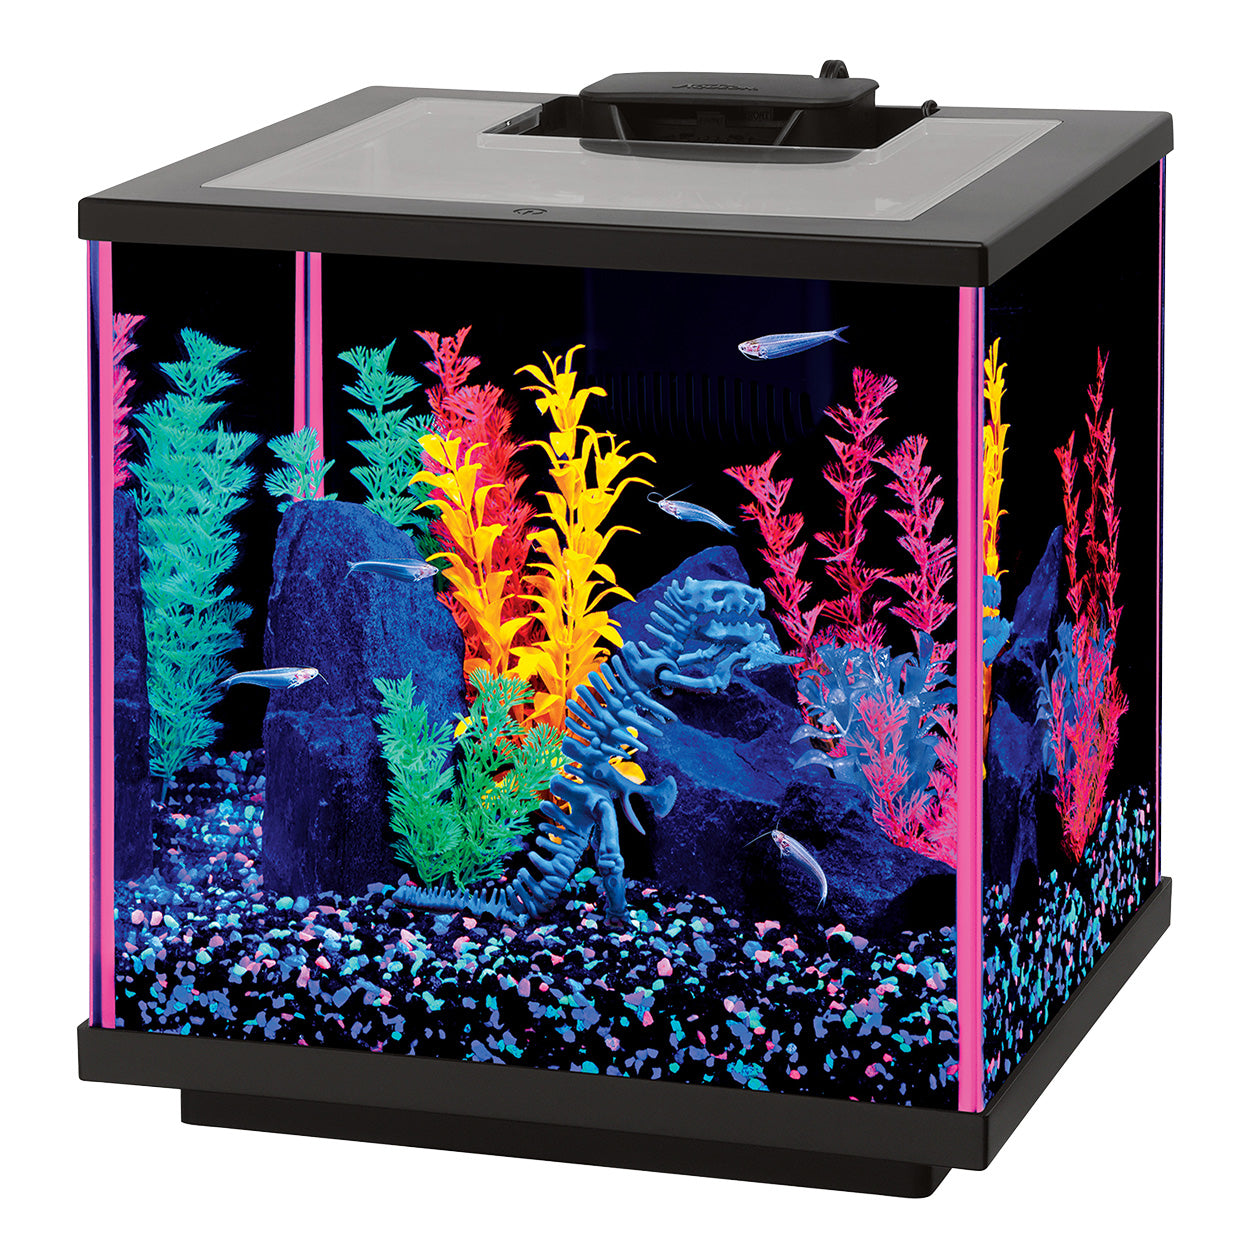 NeoGlow LED Aquarium Kit - Pink